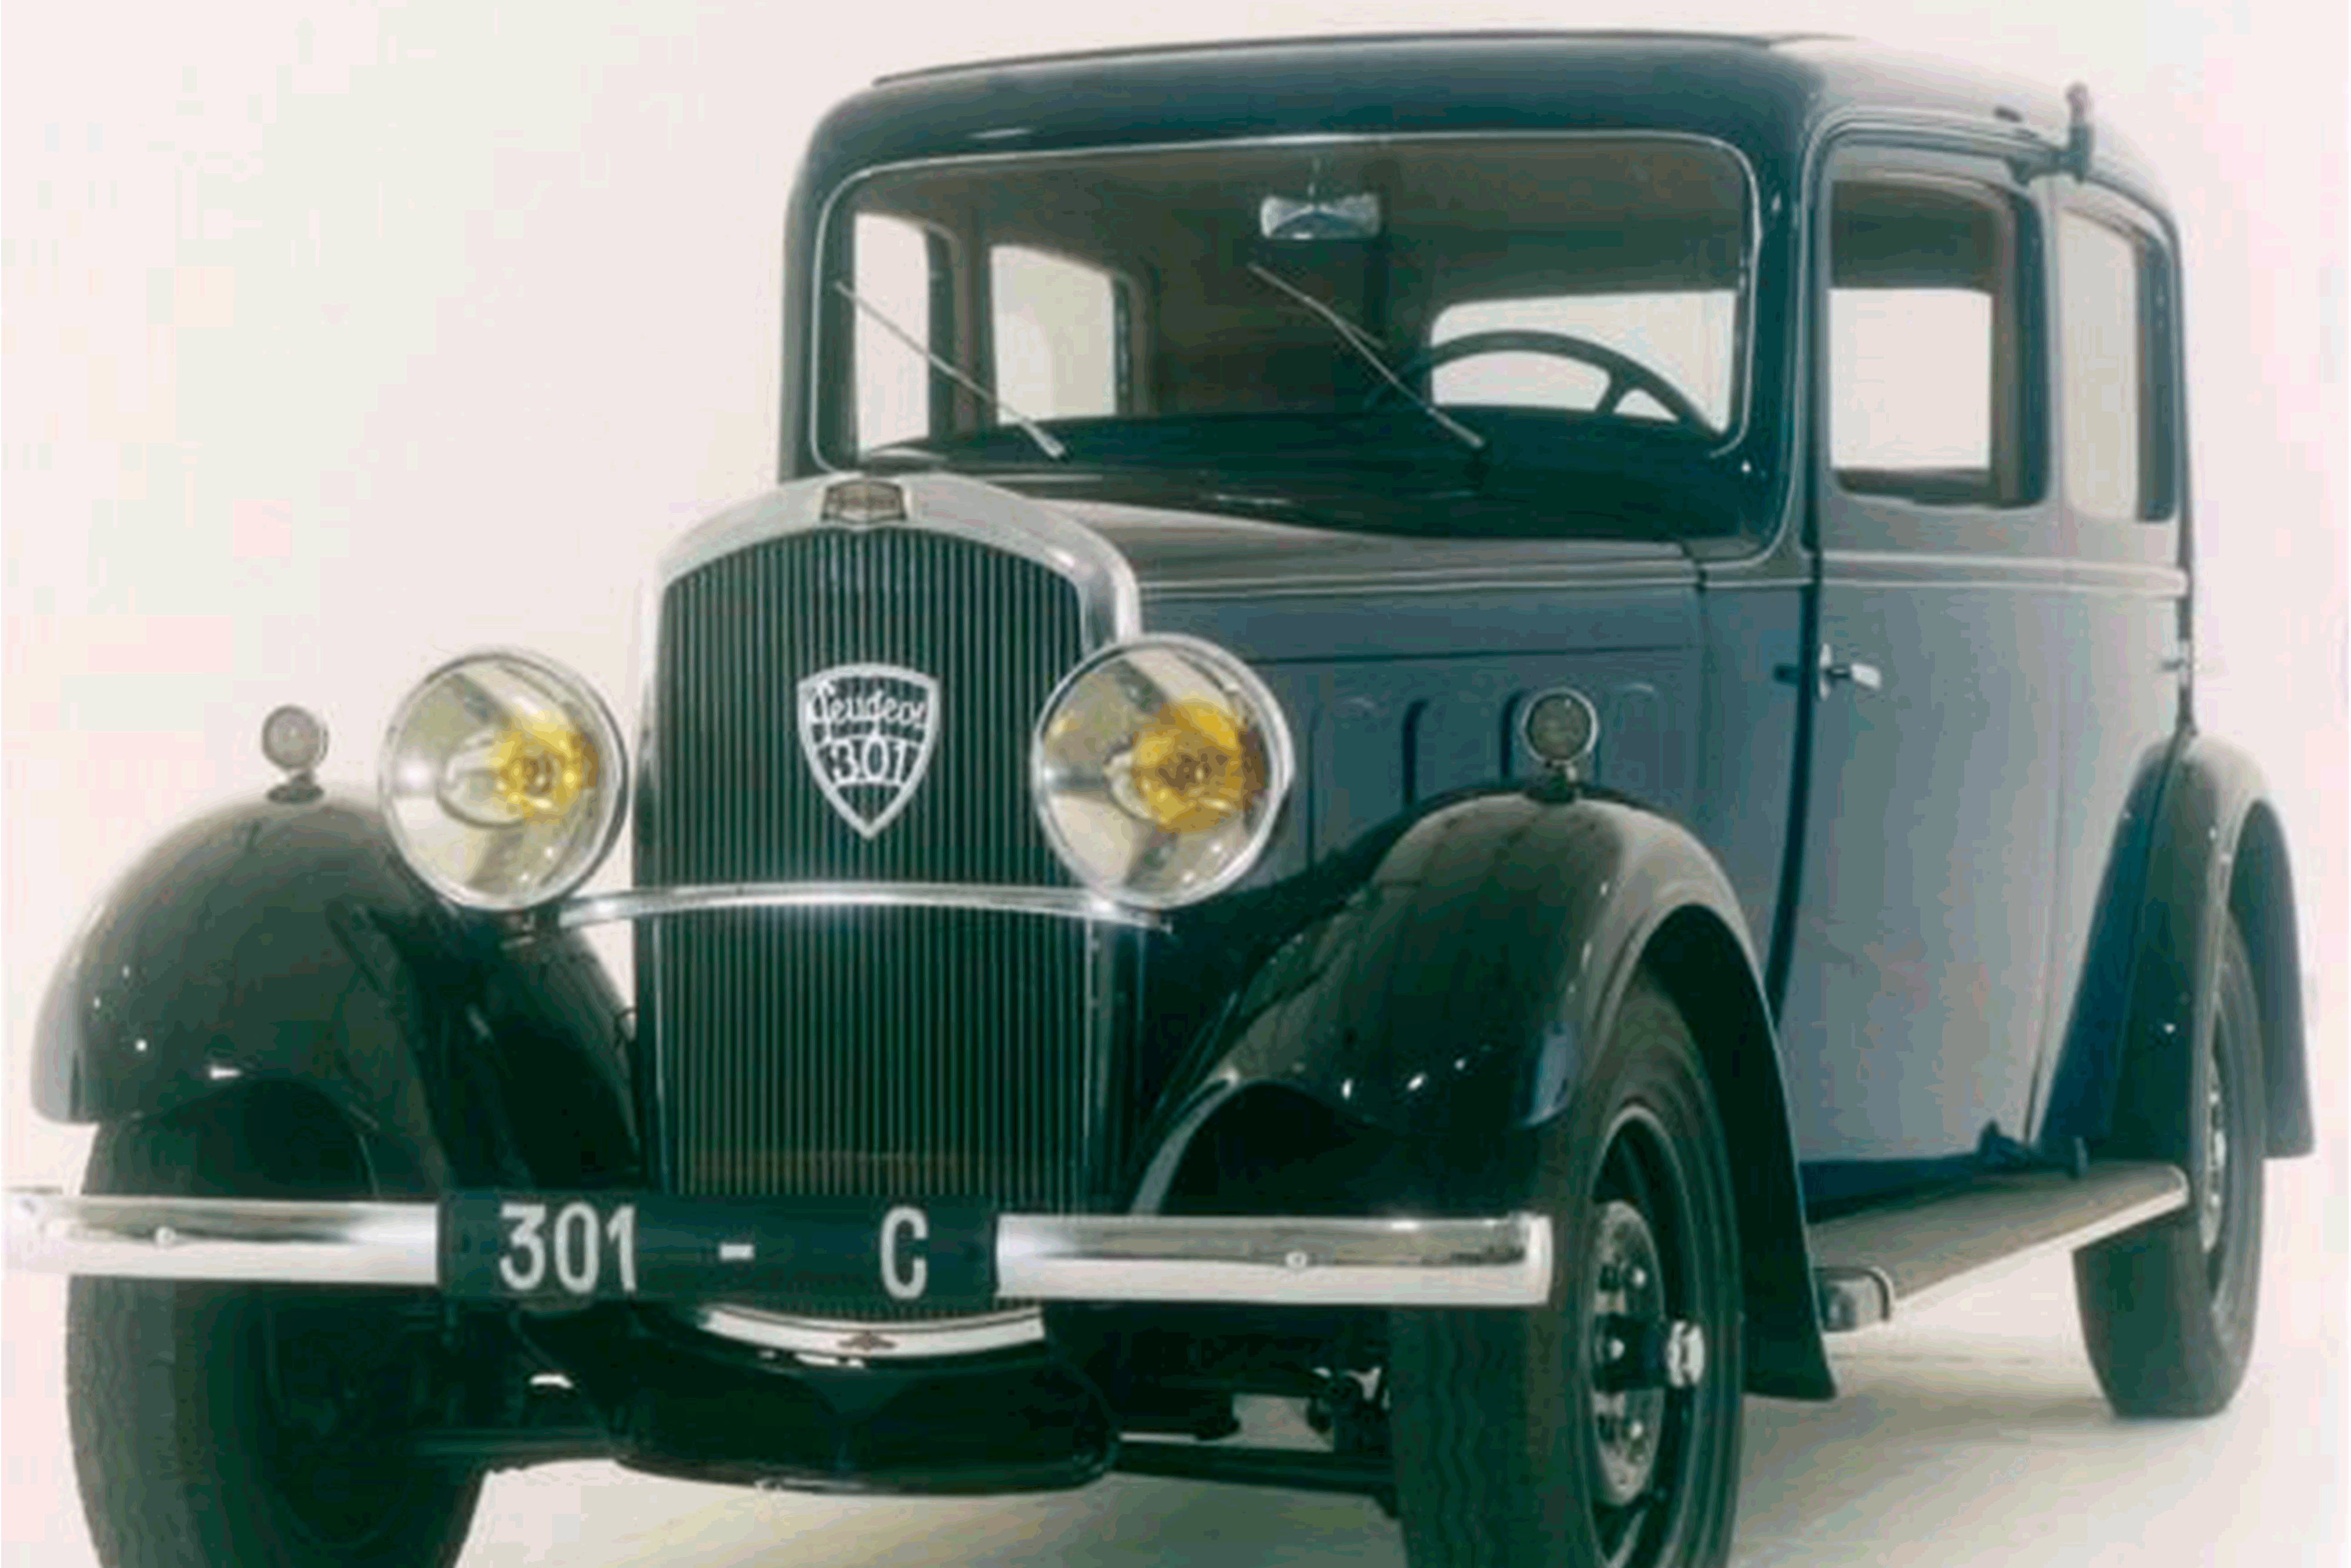 Peugeot 301, un modelo histórico